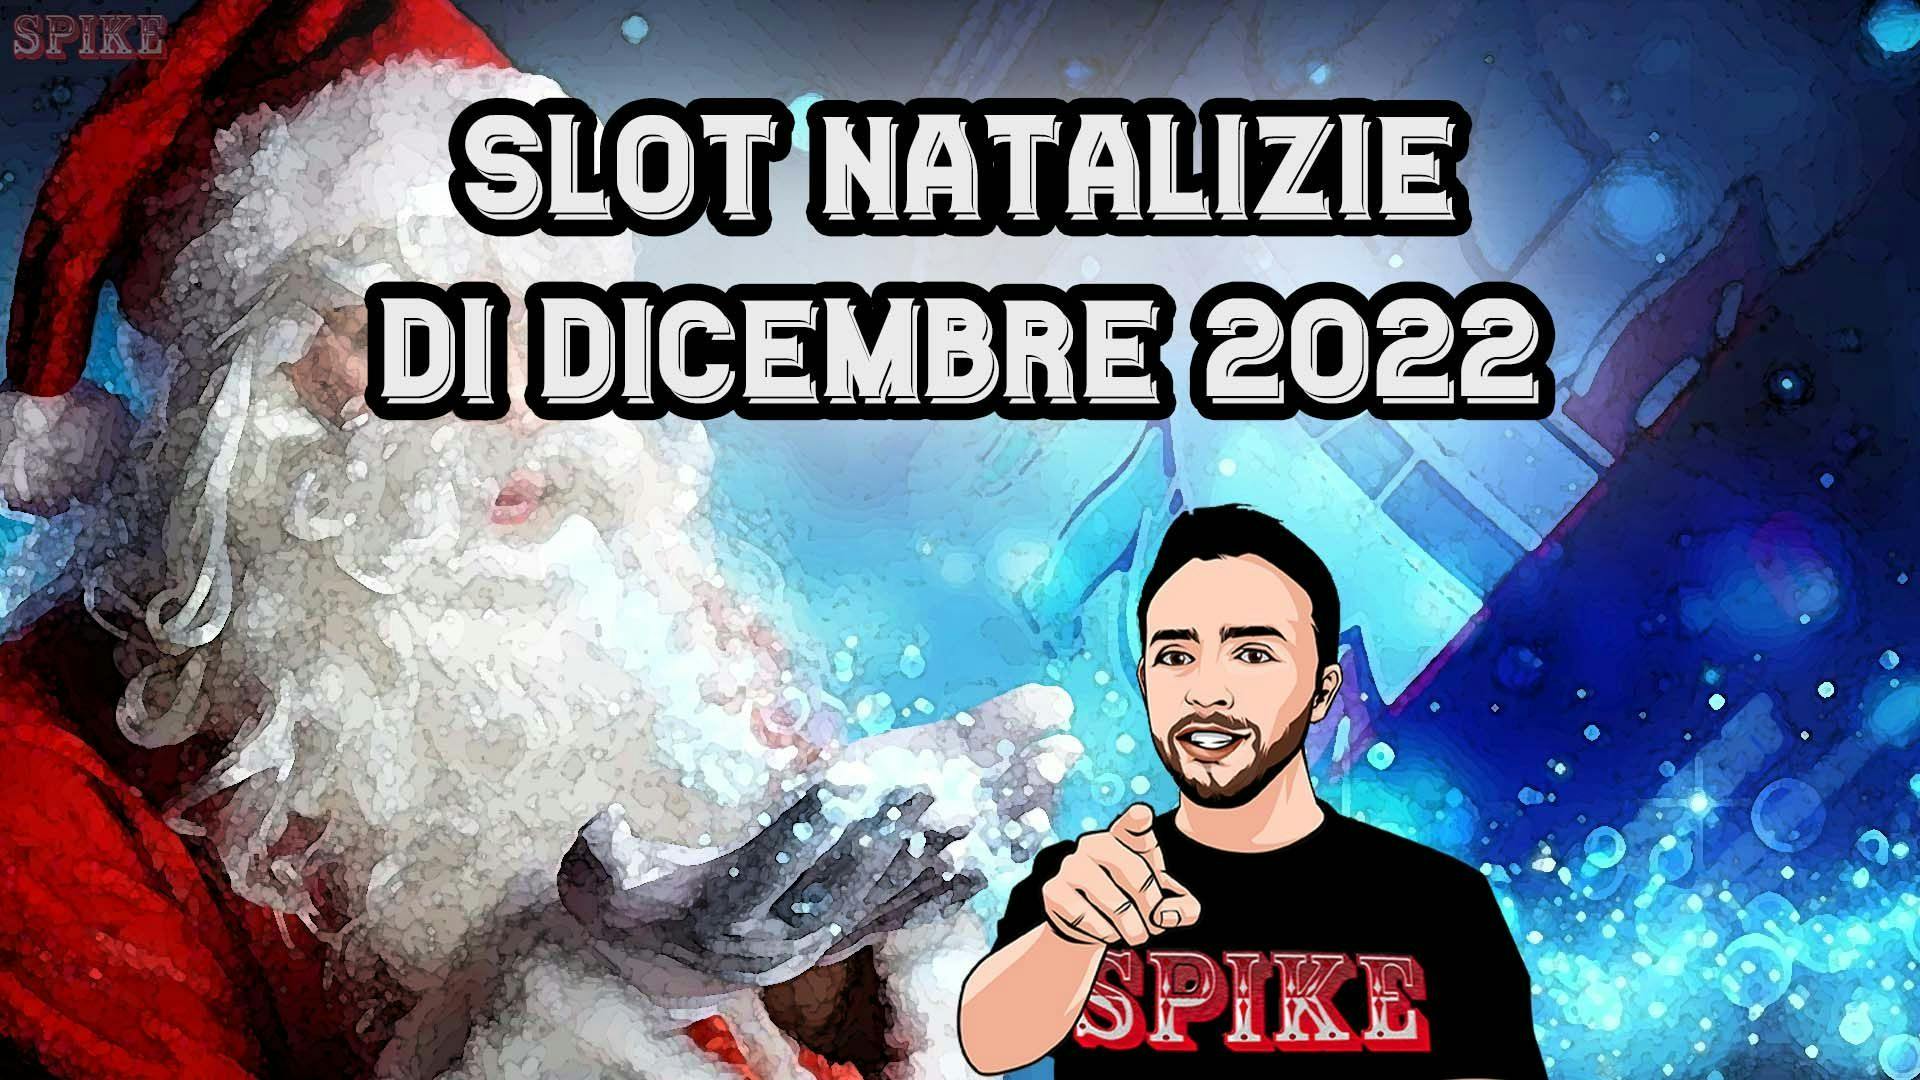 Slot Natale 2022